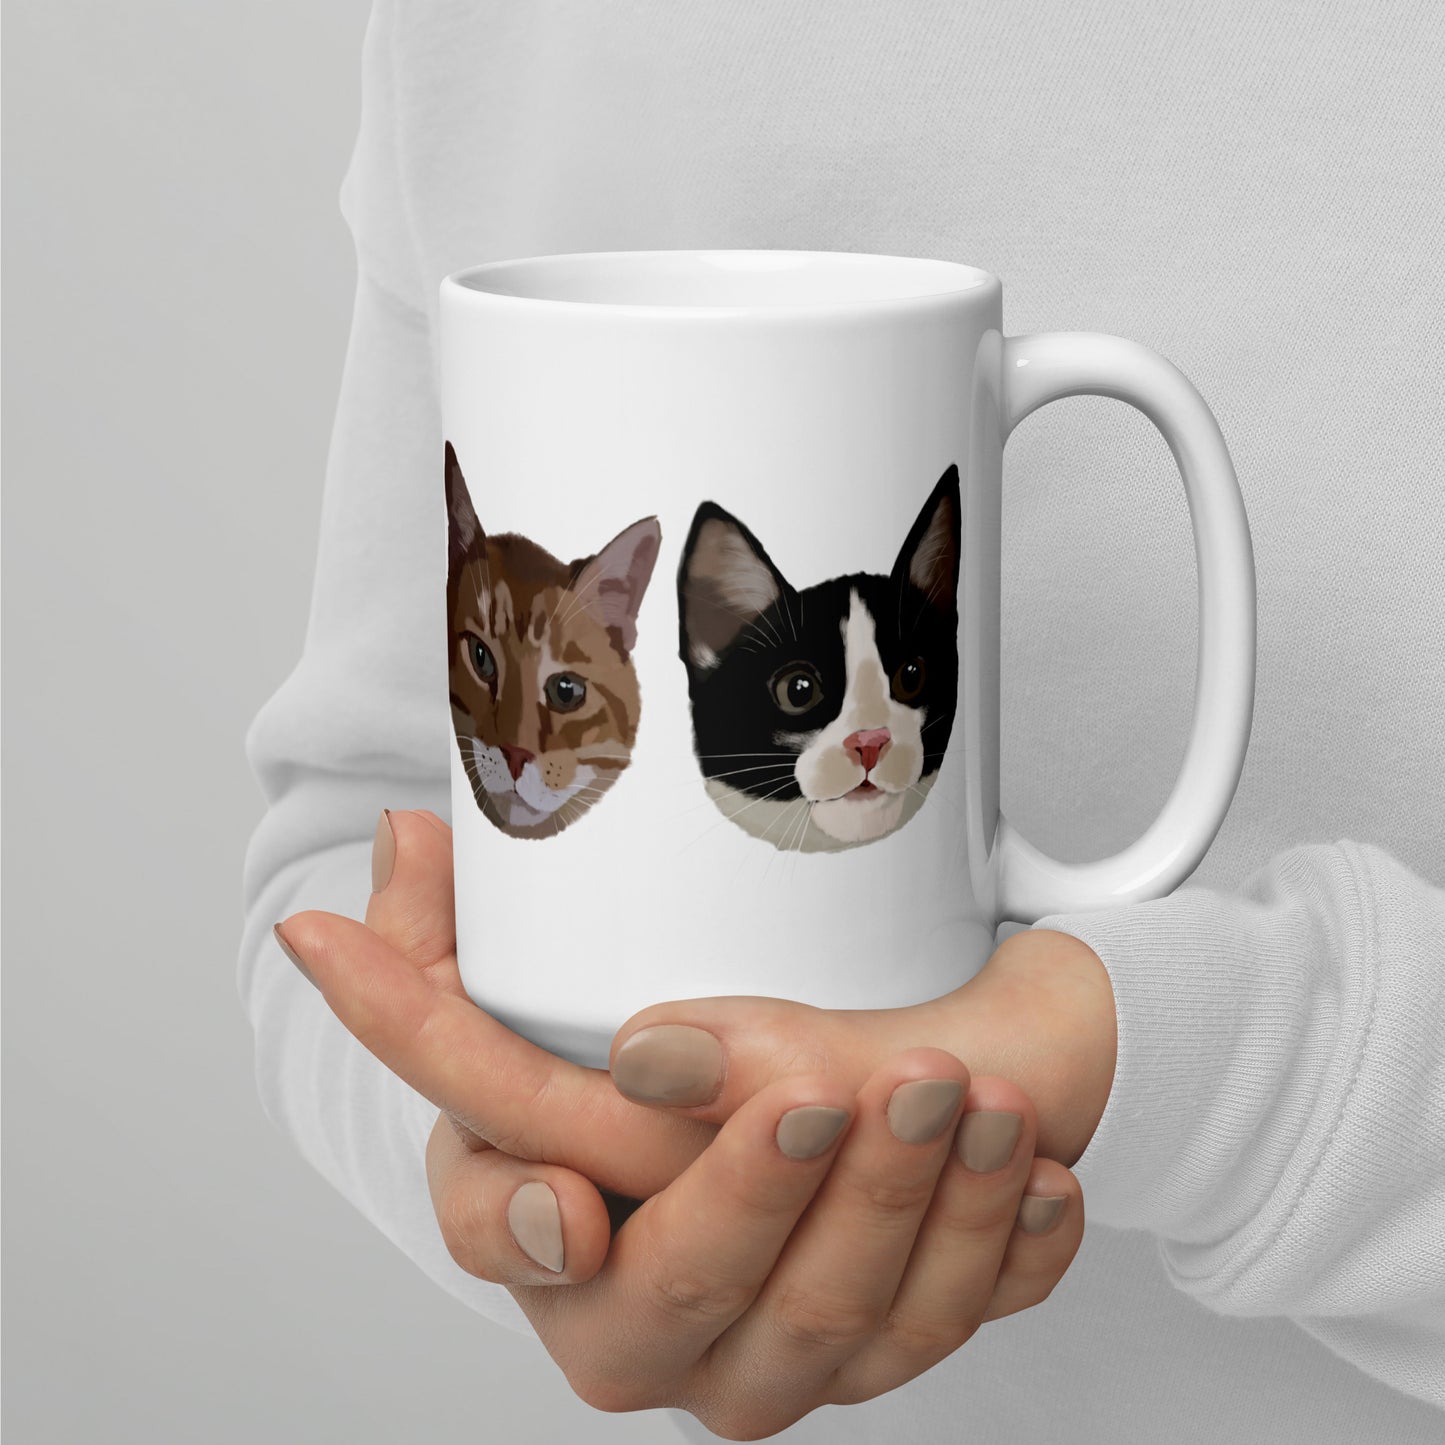 Painted Kitties Ceramic Mug